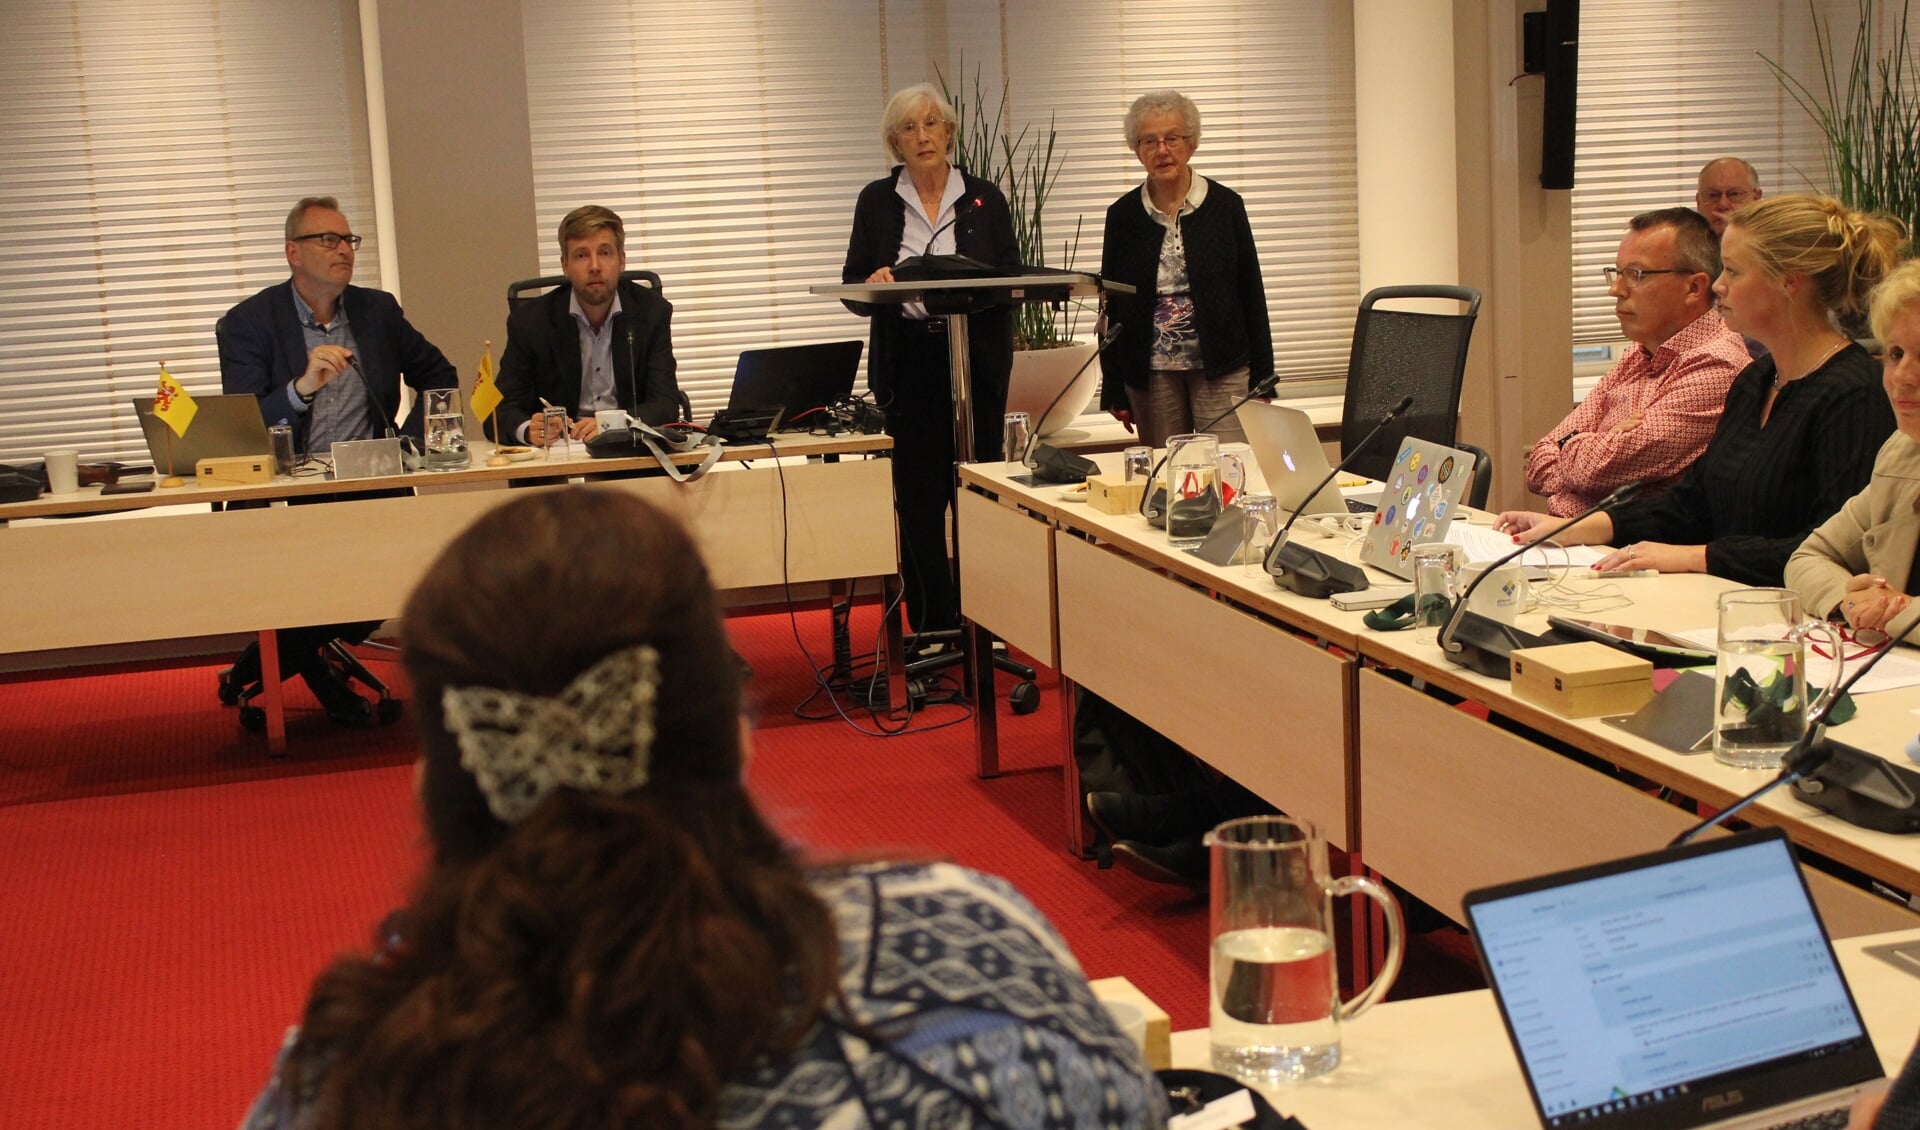 De woordvoersters Hamersma en Haasnoot pleiten in de commissie voor een blijven in de Agnes van de ouderengym.